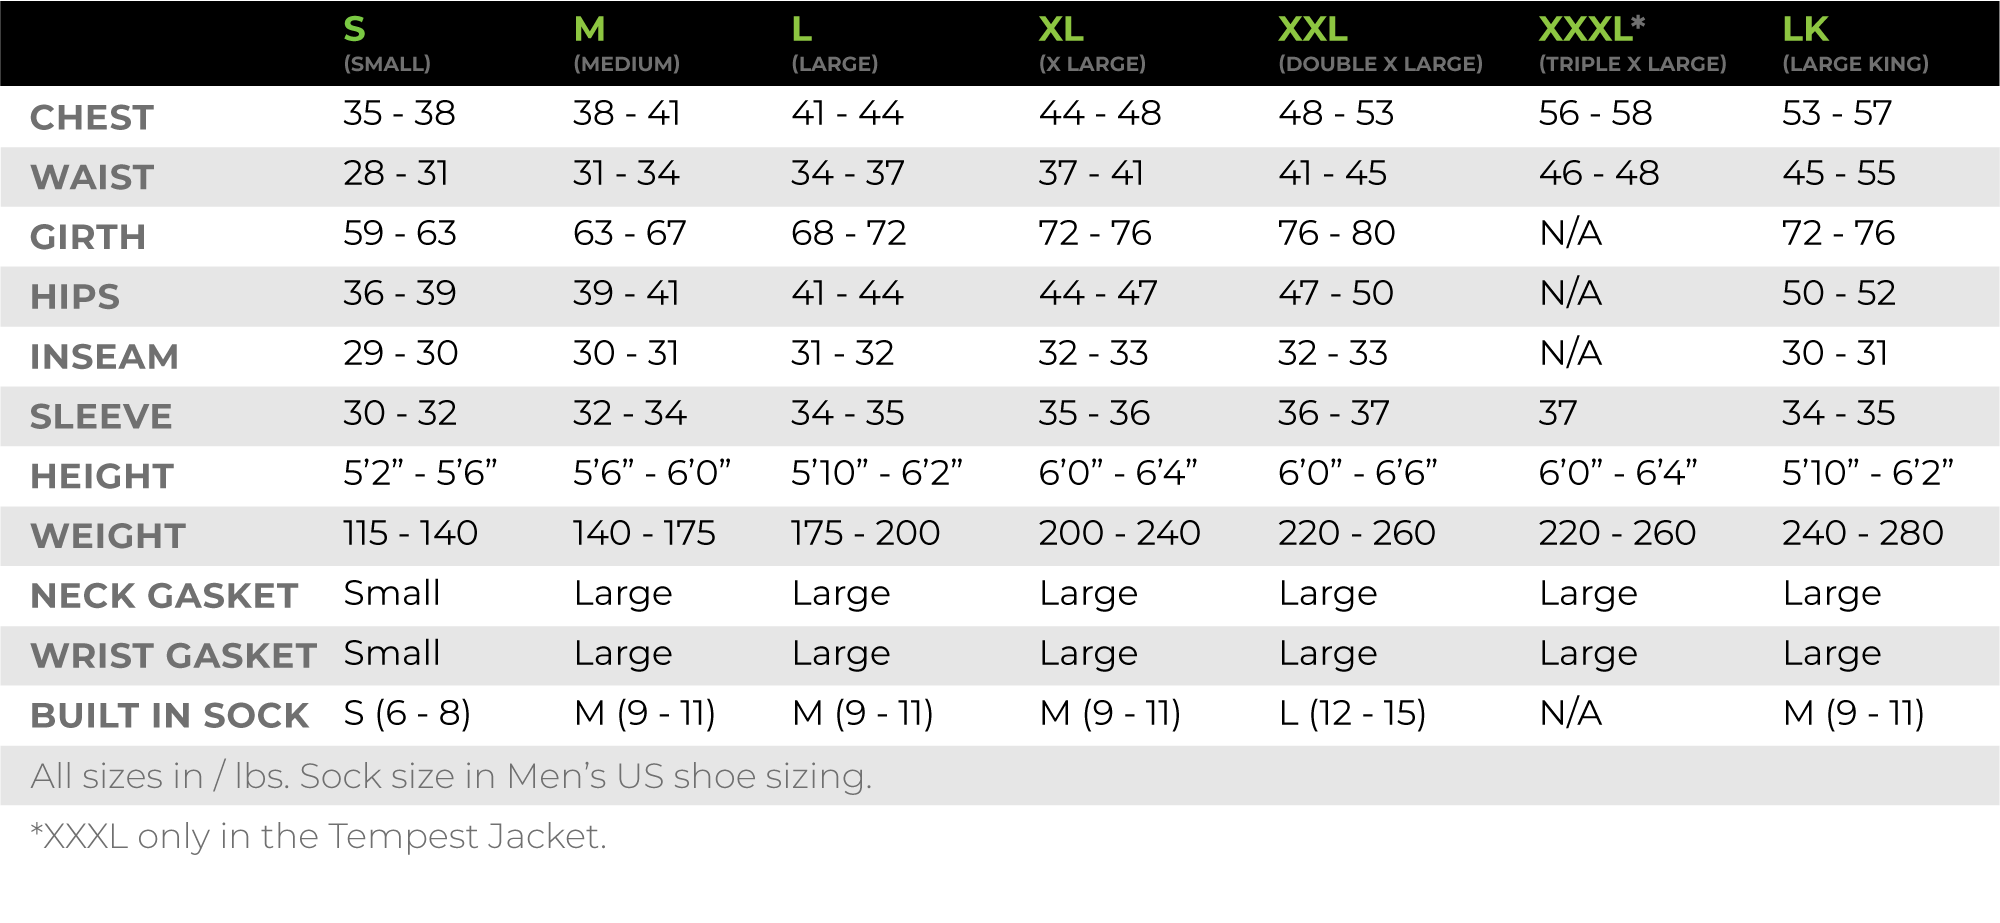 Kokatat Men's size chart